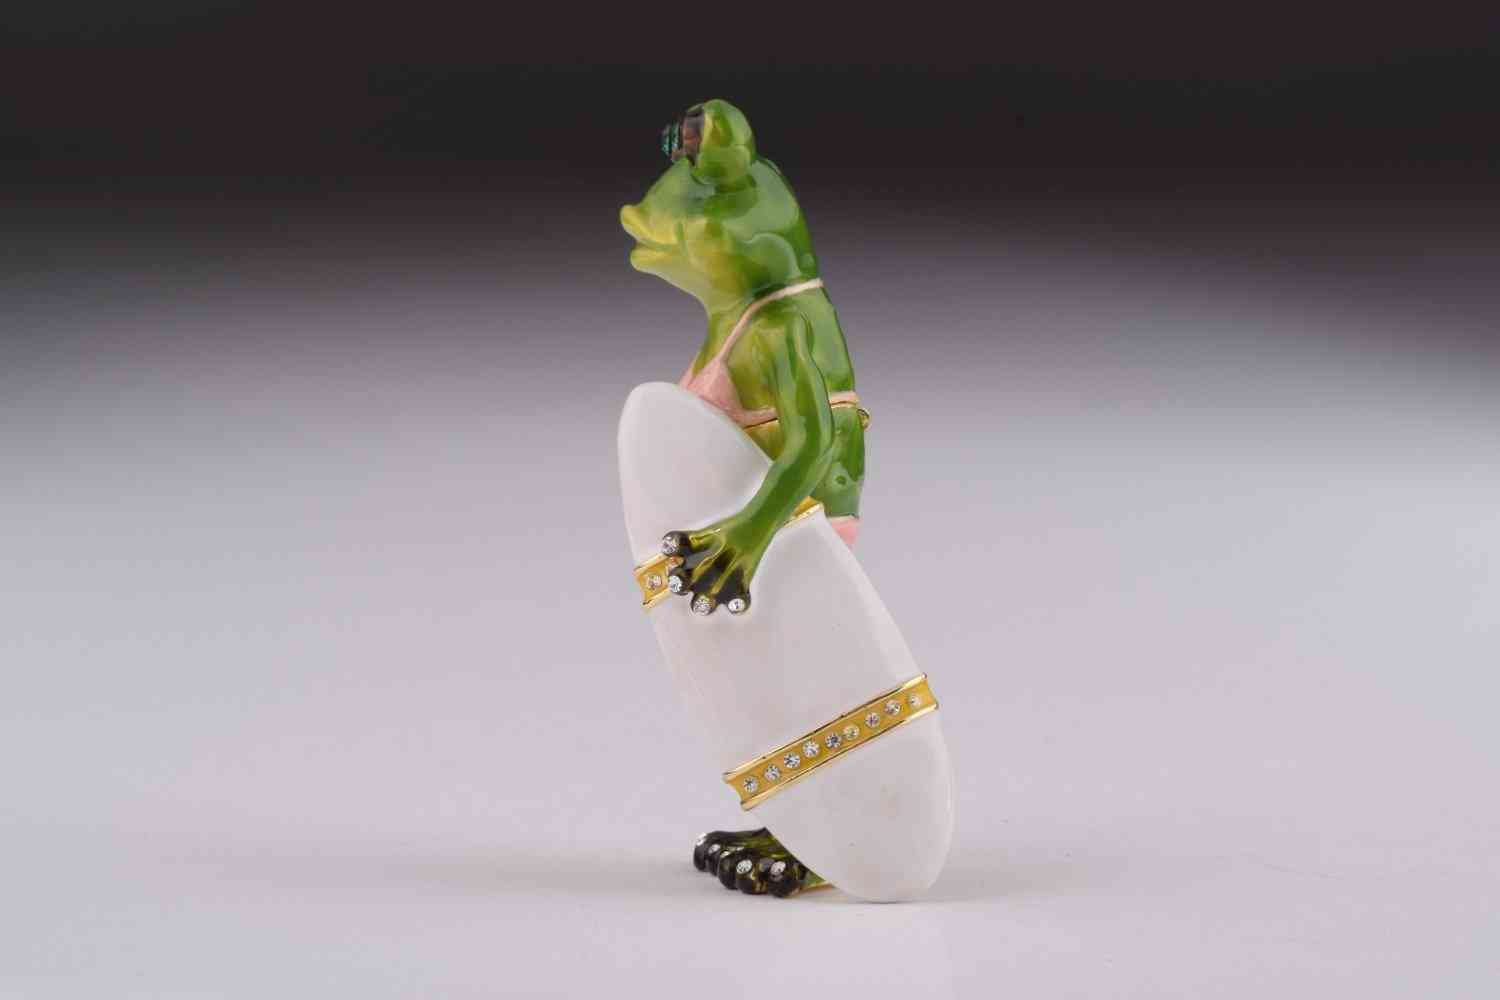 Frosch hält eine Surfbrett-Schmuckschatulle